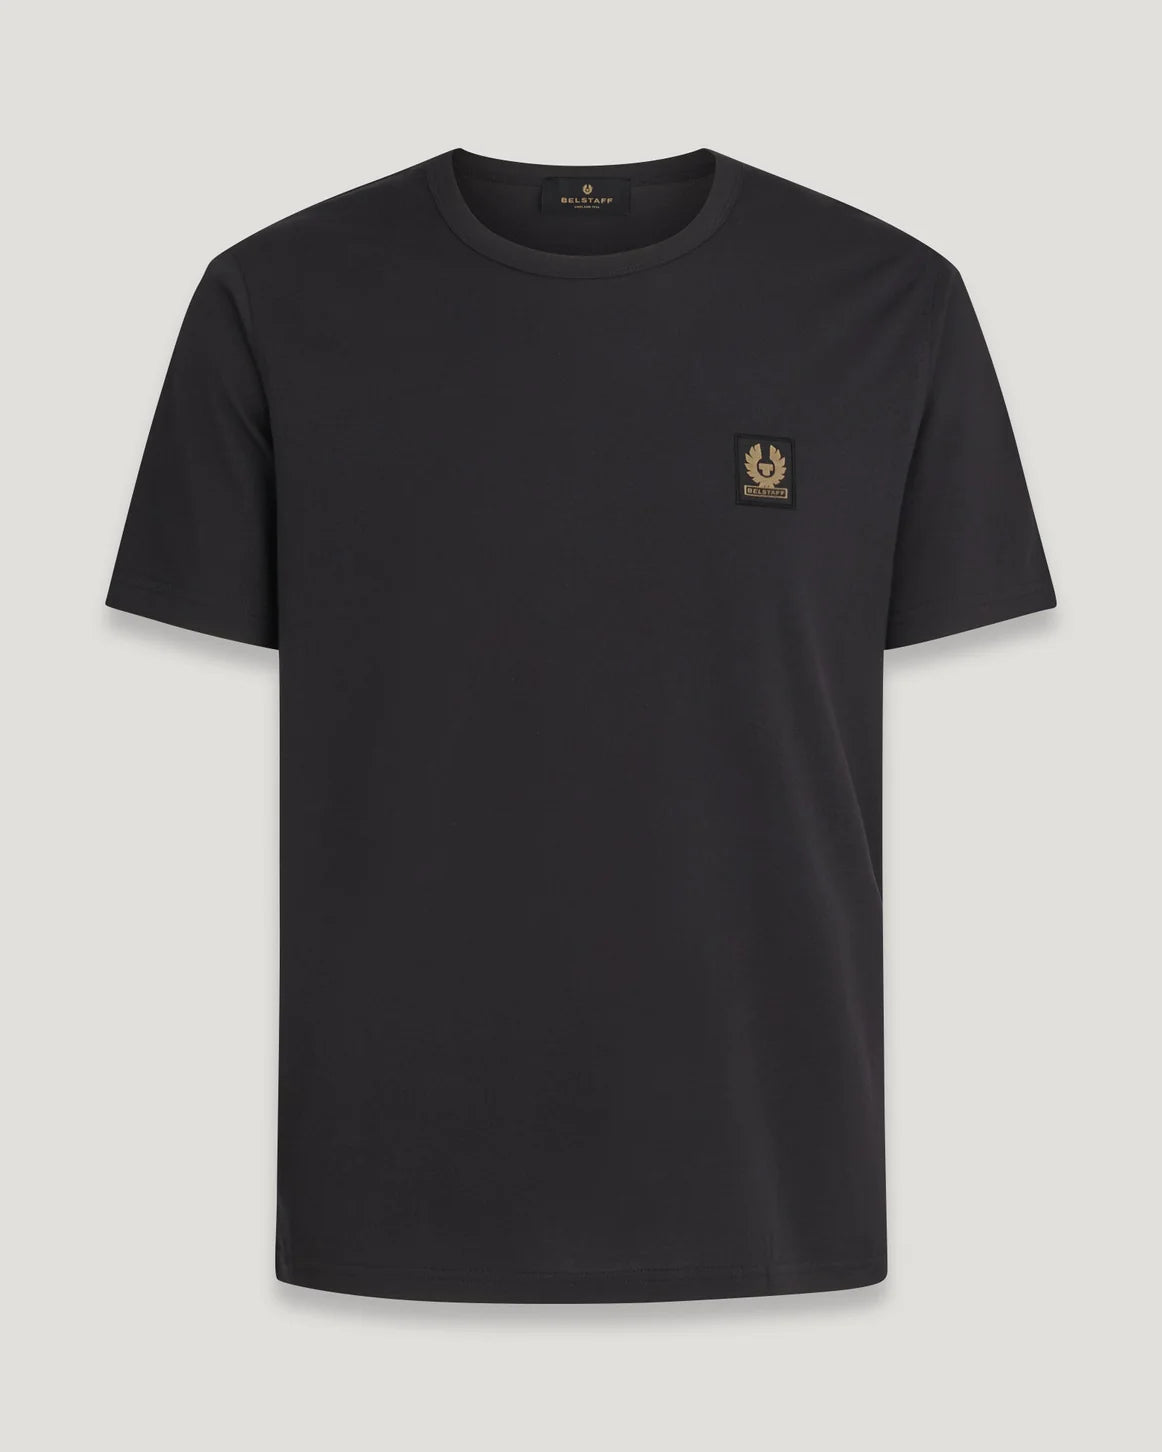 Belstaff Black Short Sleeve T-Shirt